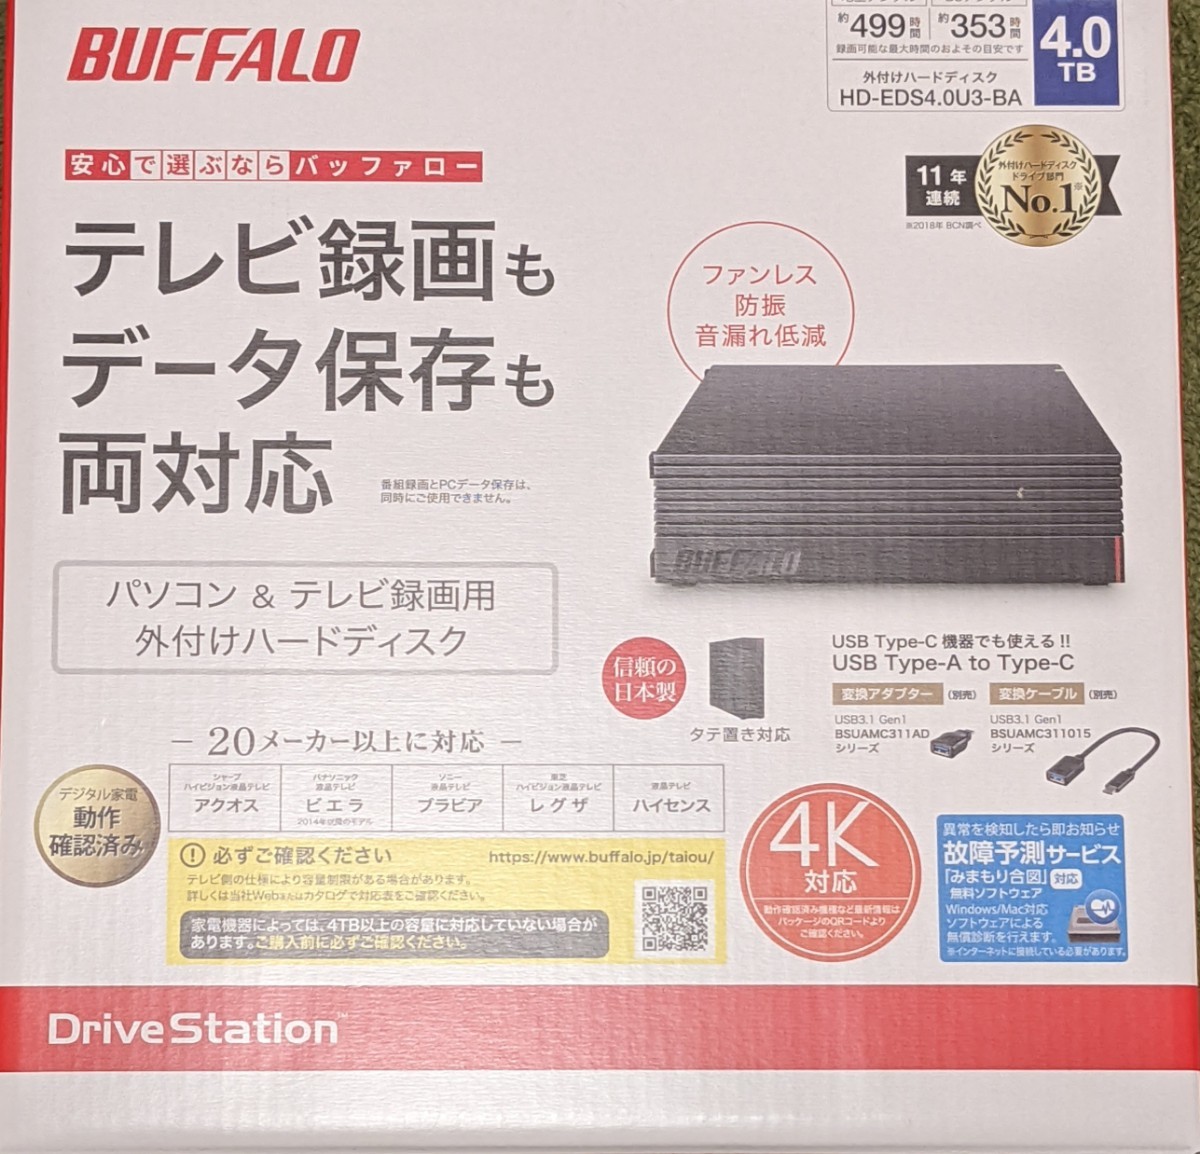 発売モデル バッファロー パソコン テレビ録画用外付けハードディスク 4.0TBUSB3.1 Gen1 USB3.0用 外付けHDD ファンレス 防振  音漏れ低減 BUFFALO HD-EDS-Aシリーズ HD-EDS4.0U3-BA